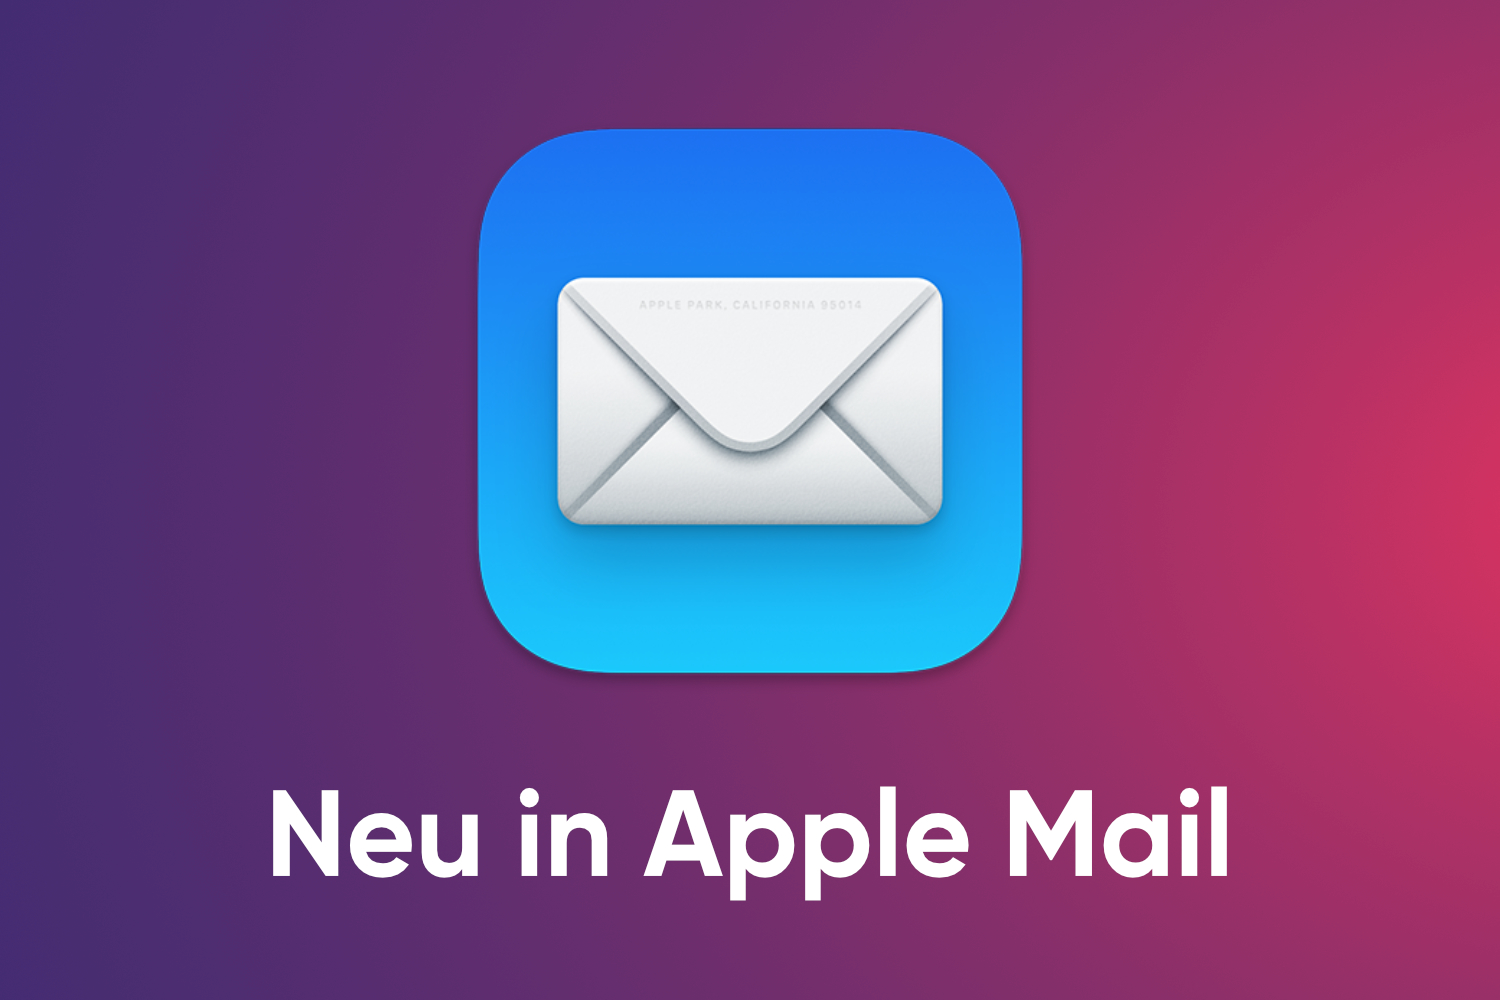  Neue Funktionen für Apple Mail auf macOS Ventura